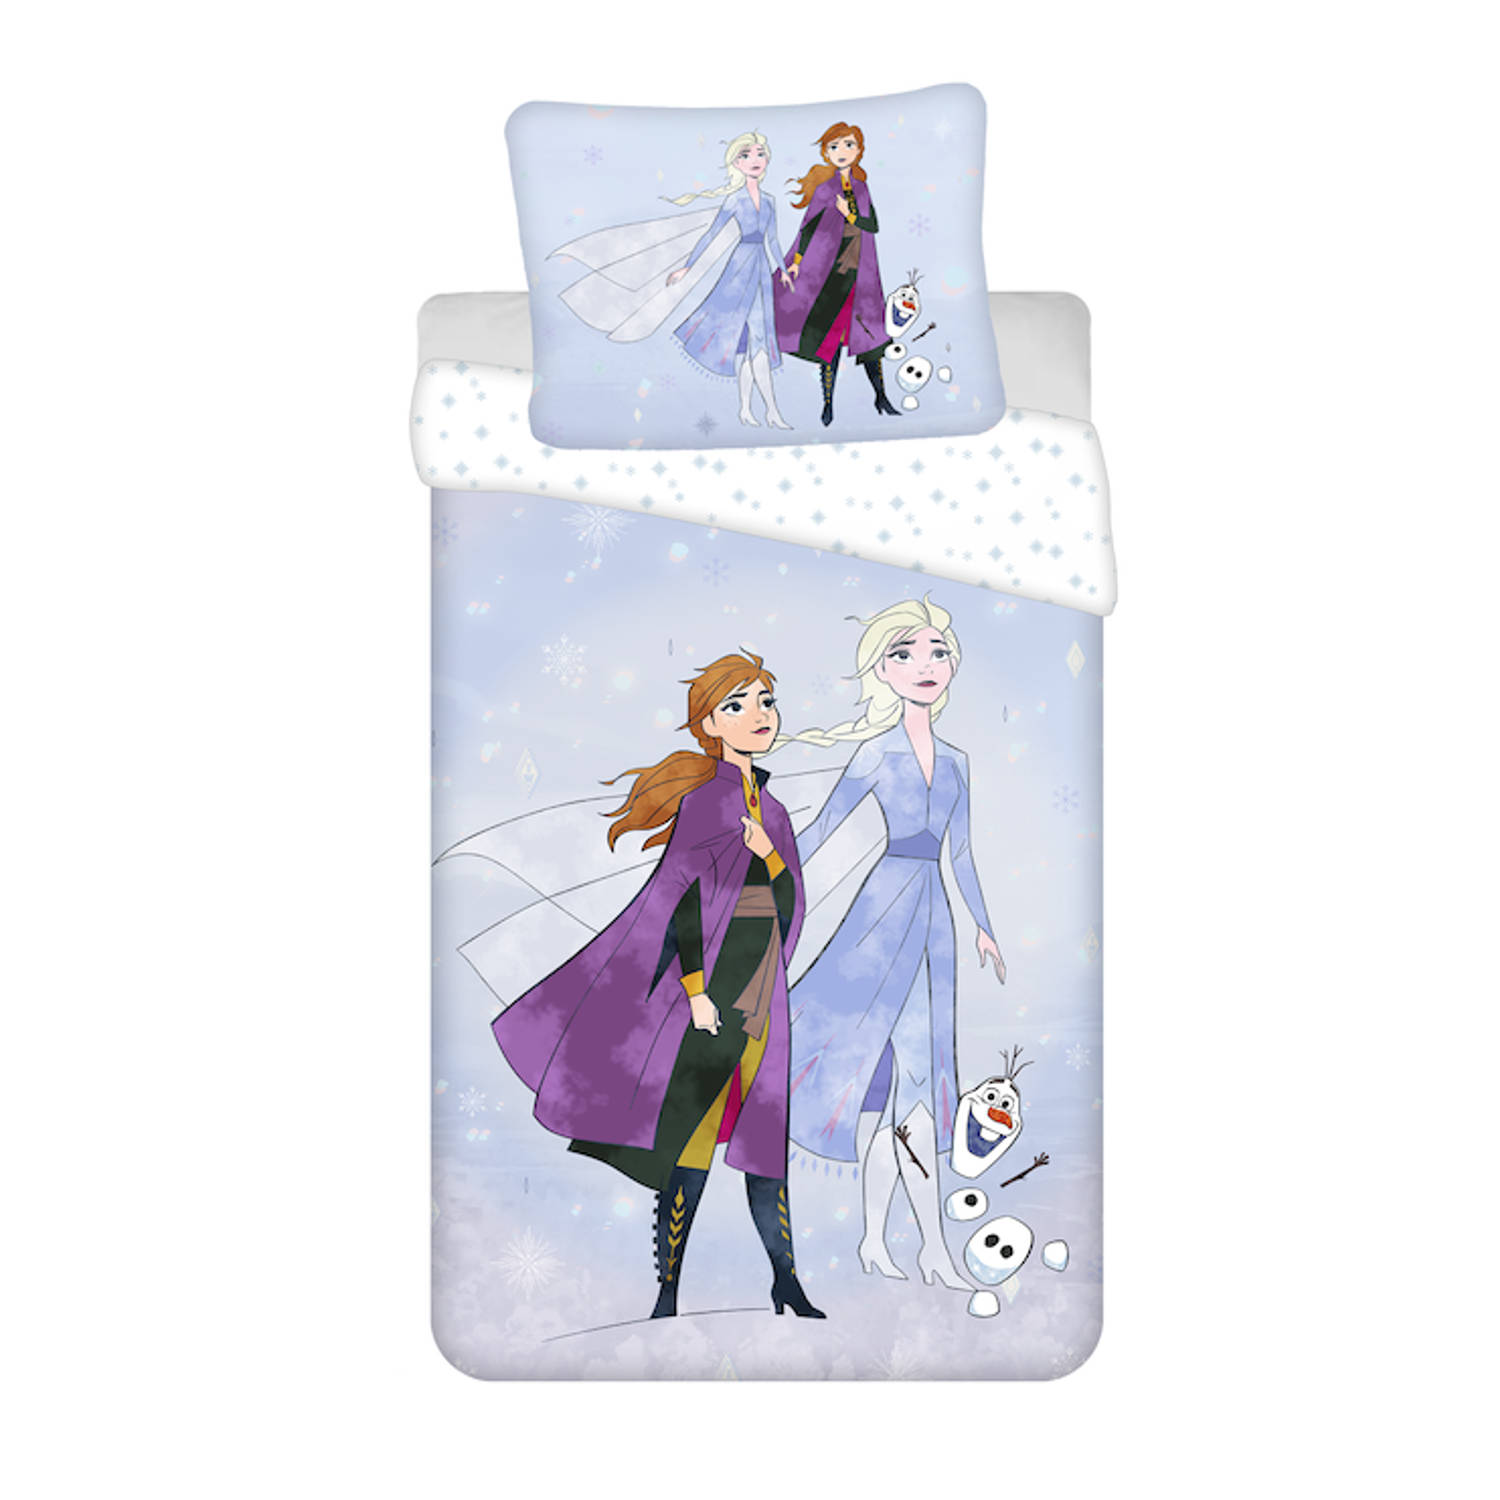 Disney Frozen Dekbedovertrek Sisters en Olaf - Eenpersoons -140 x 200 cm - Katoen